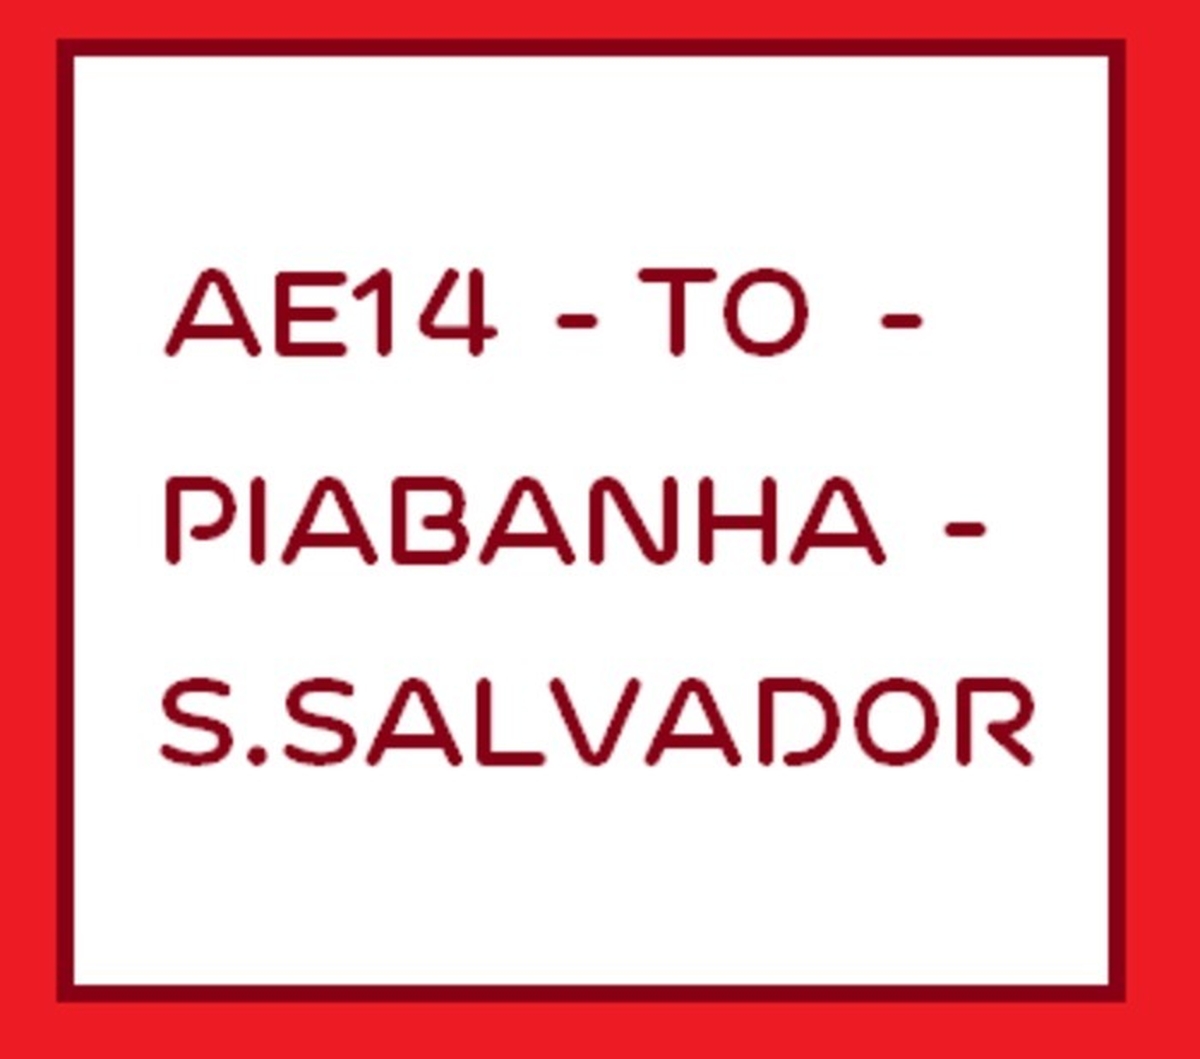 AE14 - TO - Piabanha